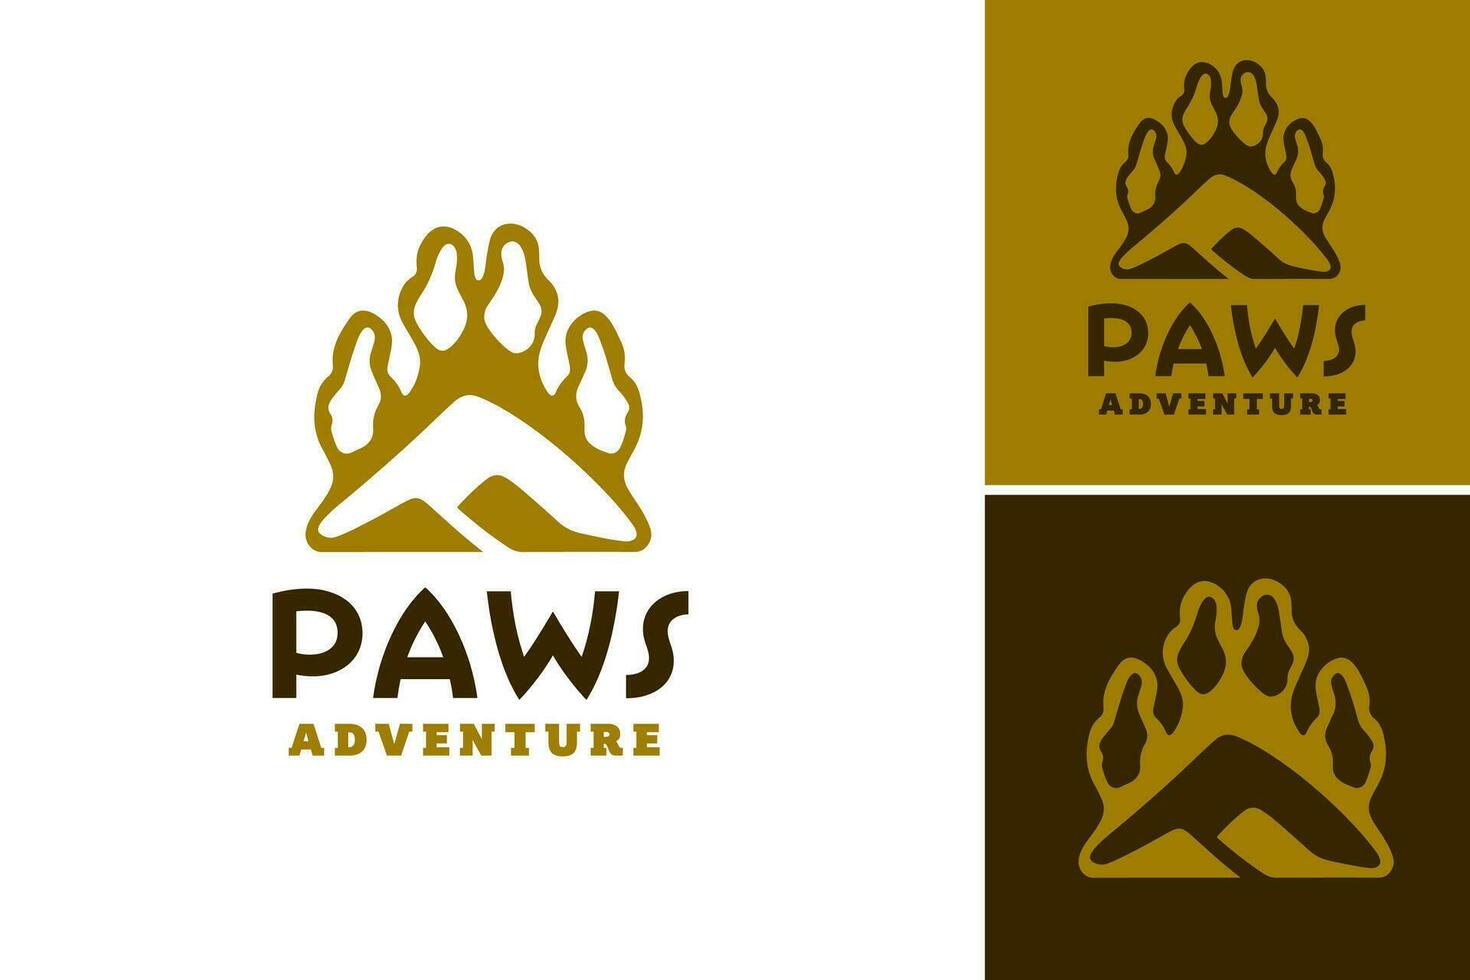 pattes aventure logo est une conception atout adapté pour entreprises ou des produits en relation à animaux, animaux domestiques, ou Extérieur aventures vecteur